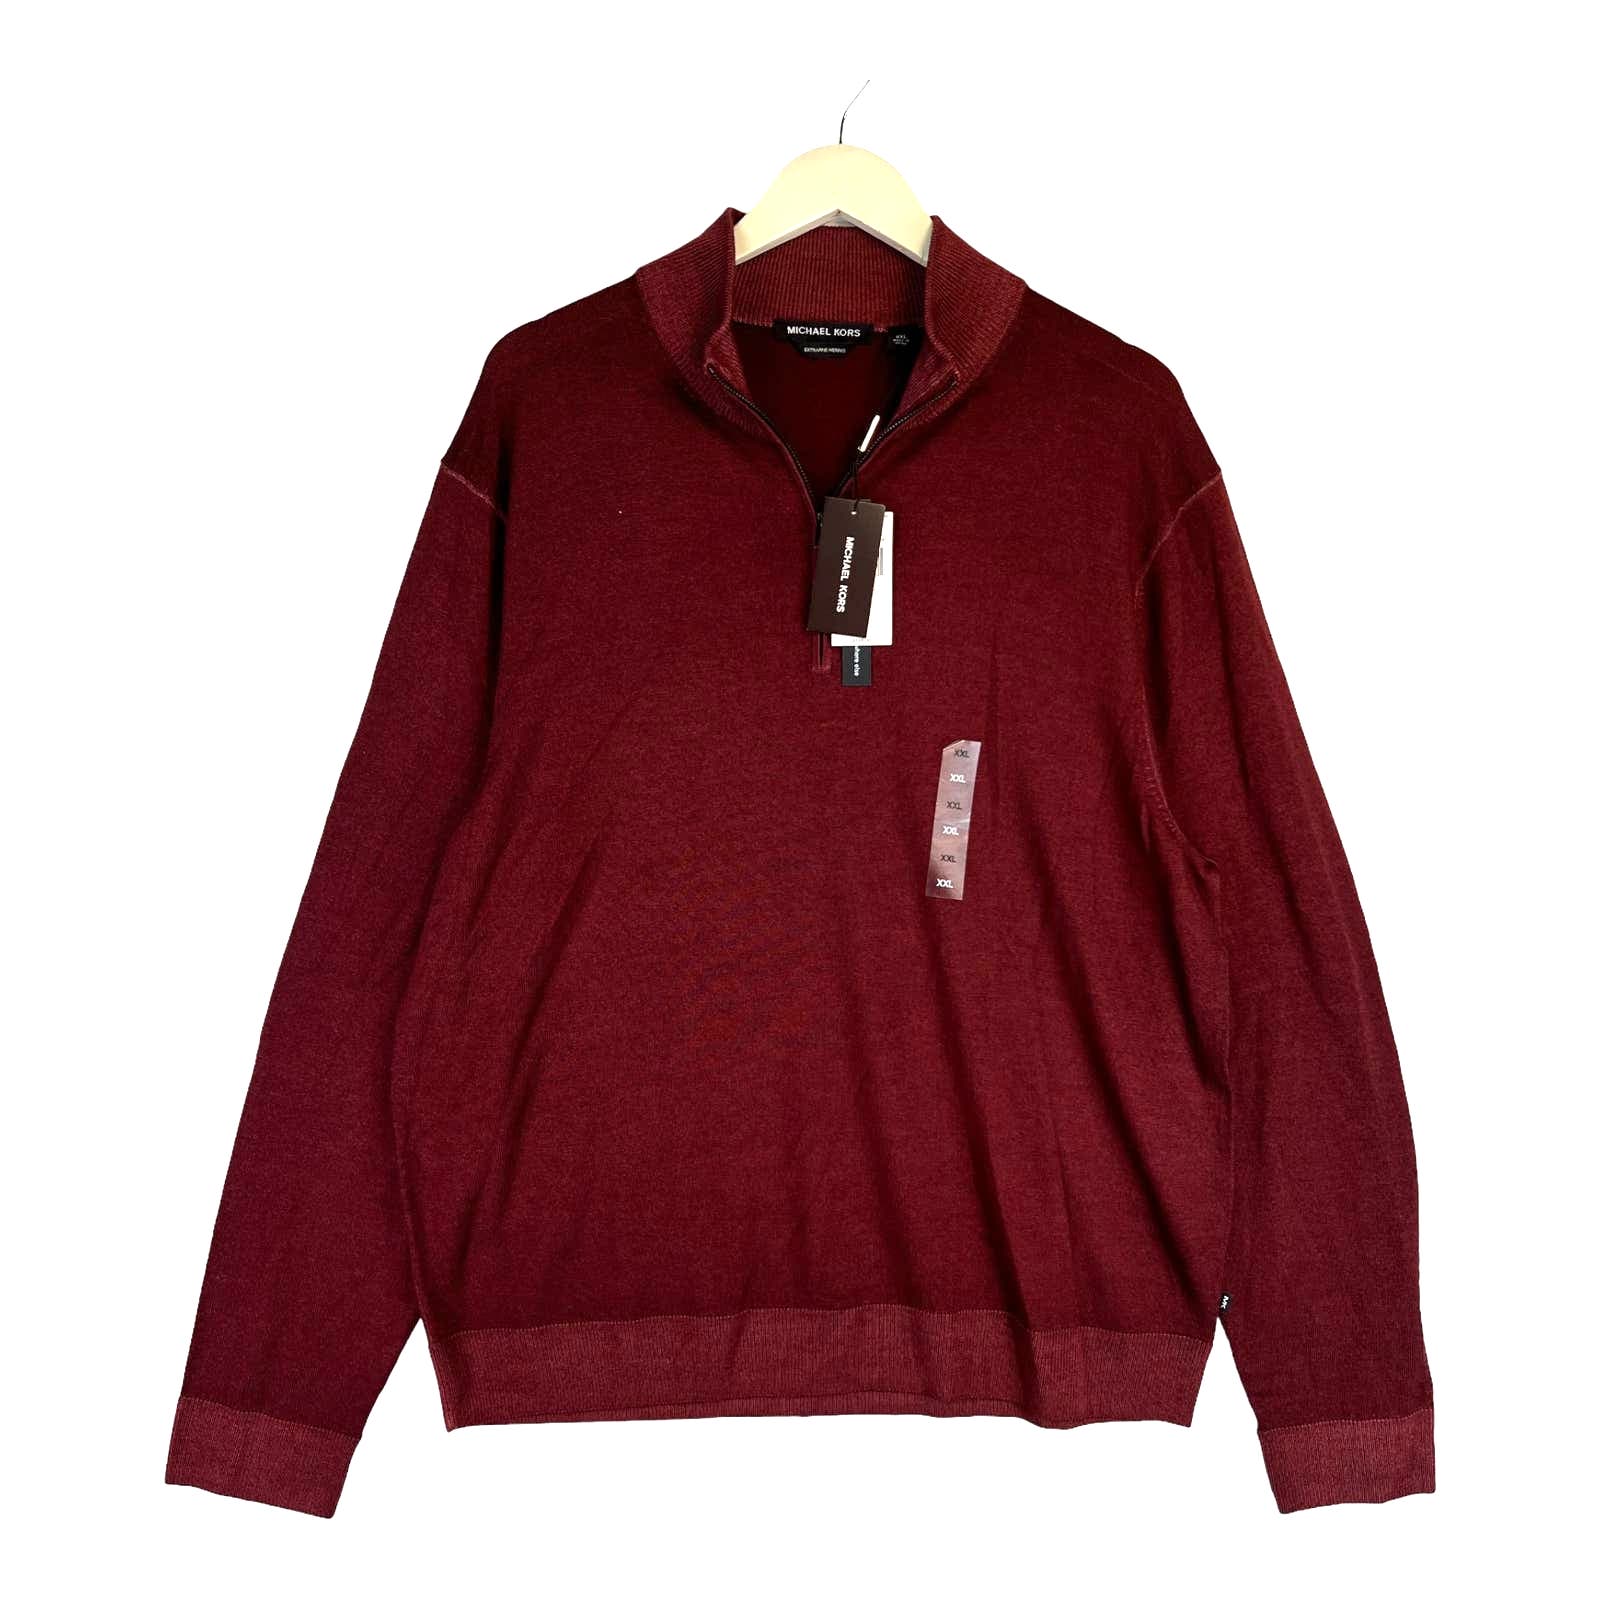 Michael Kors Men Burgundy Sweatshirt US XXL Merino Wool Sweater